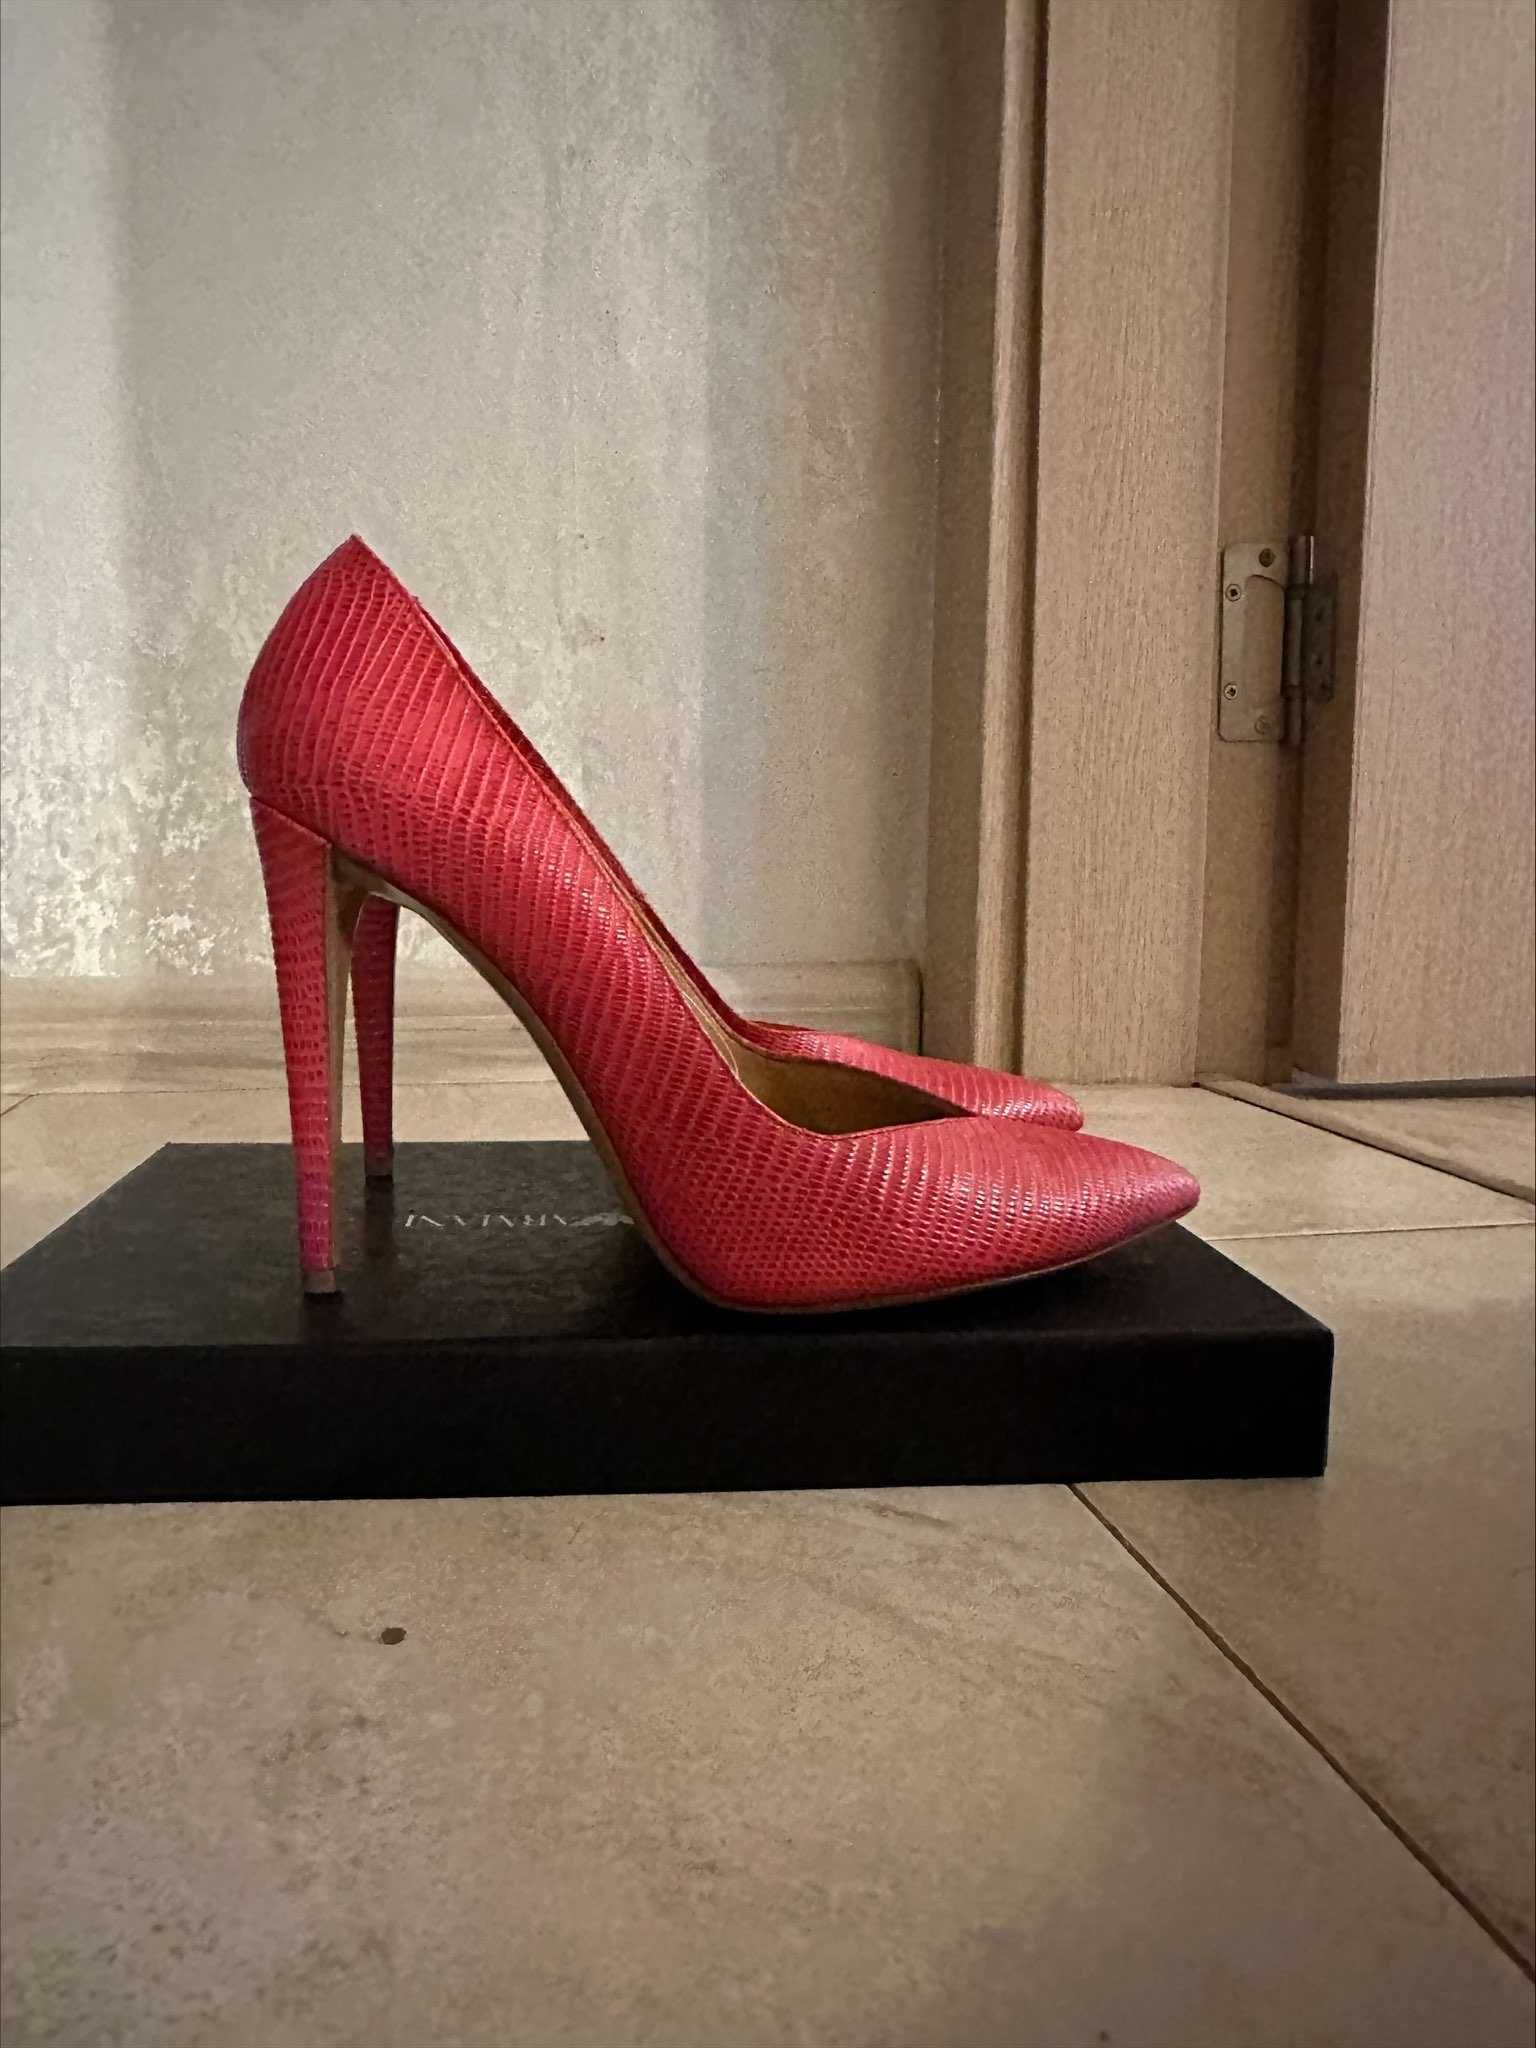 Обувки Emporio Armani, цвят фуксия, 39 номер